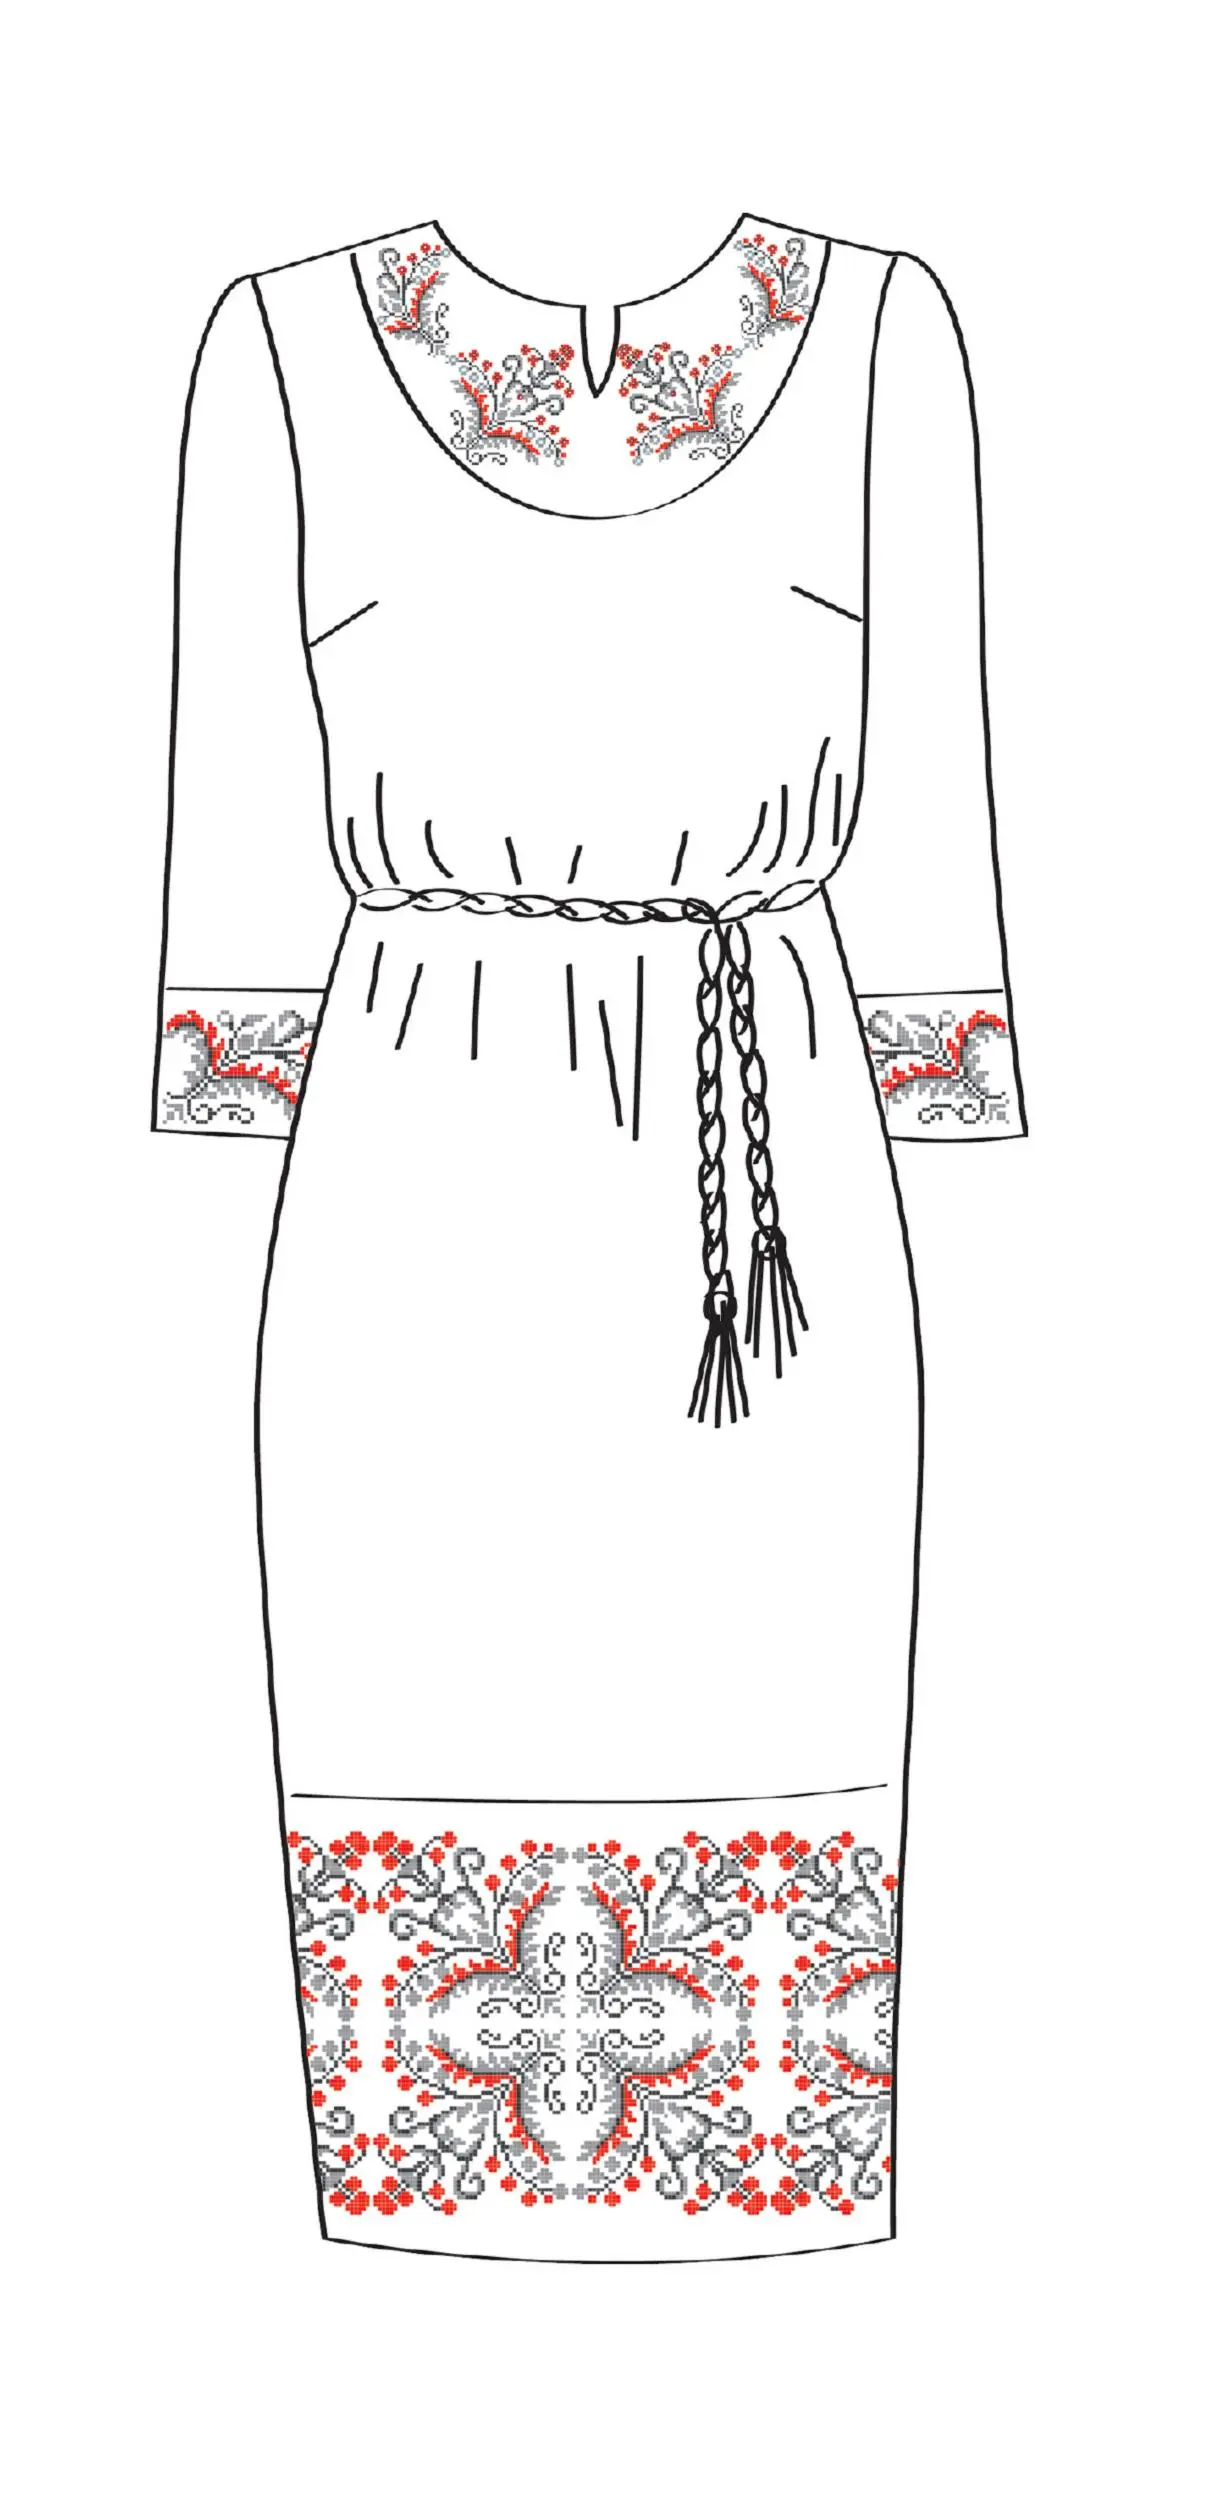 820-14/09 Плаття жіноче з поясом, біле, розмір 40